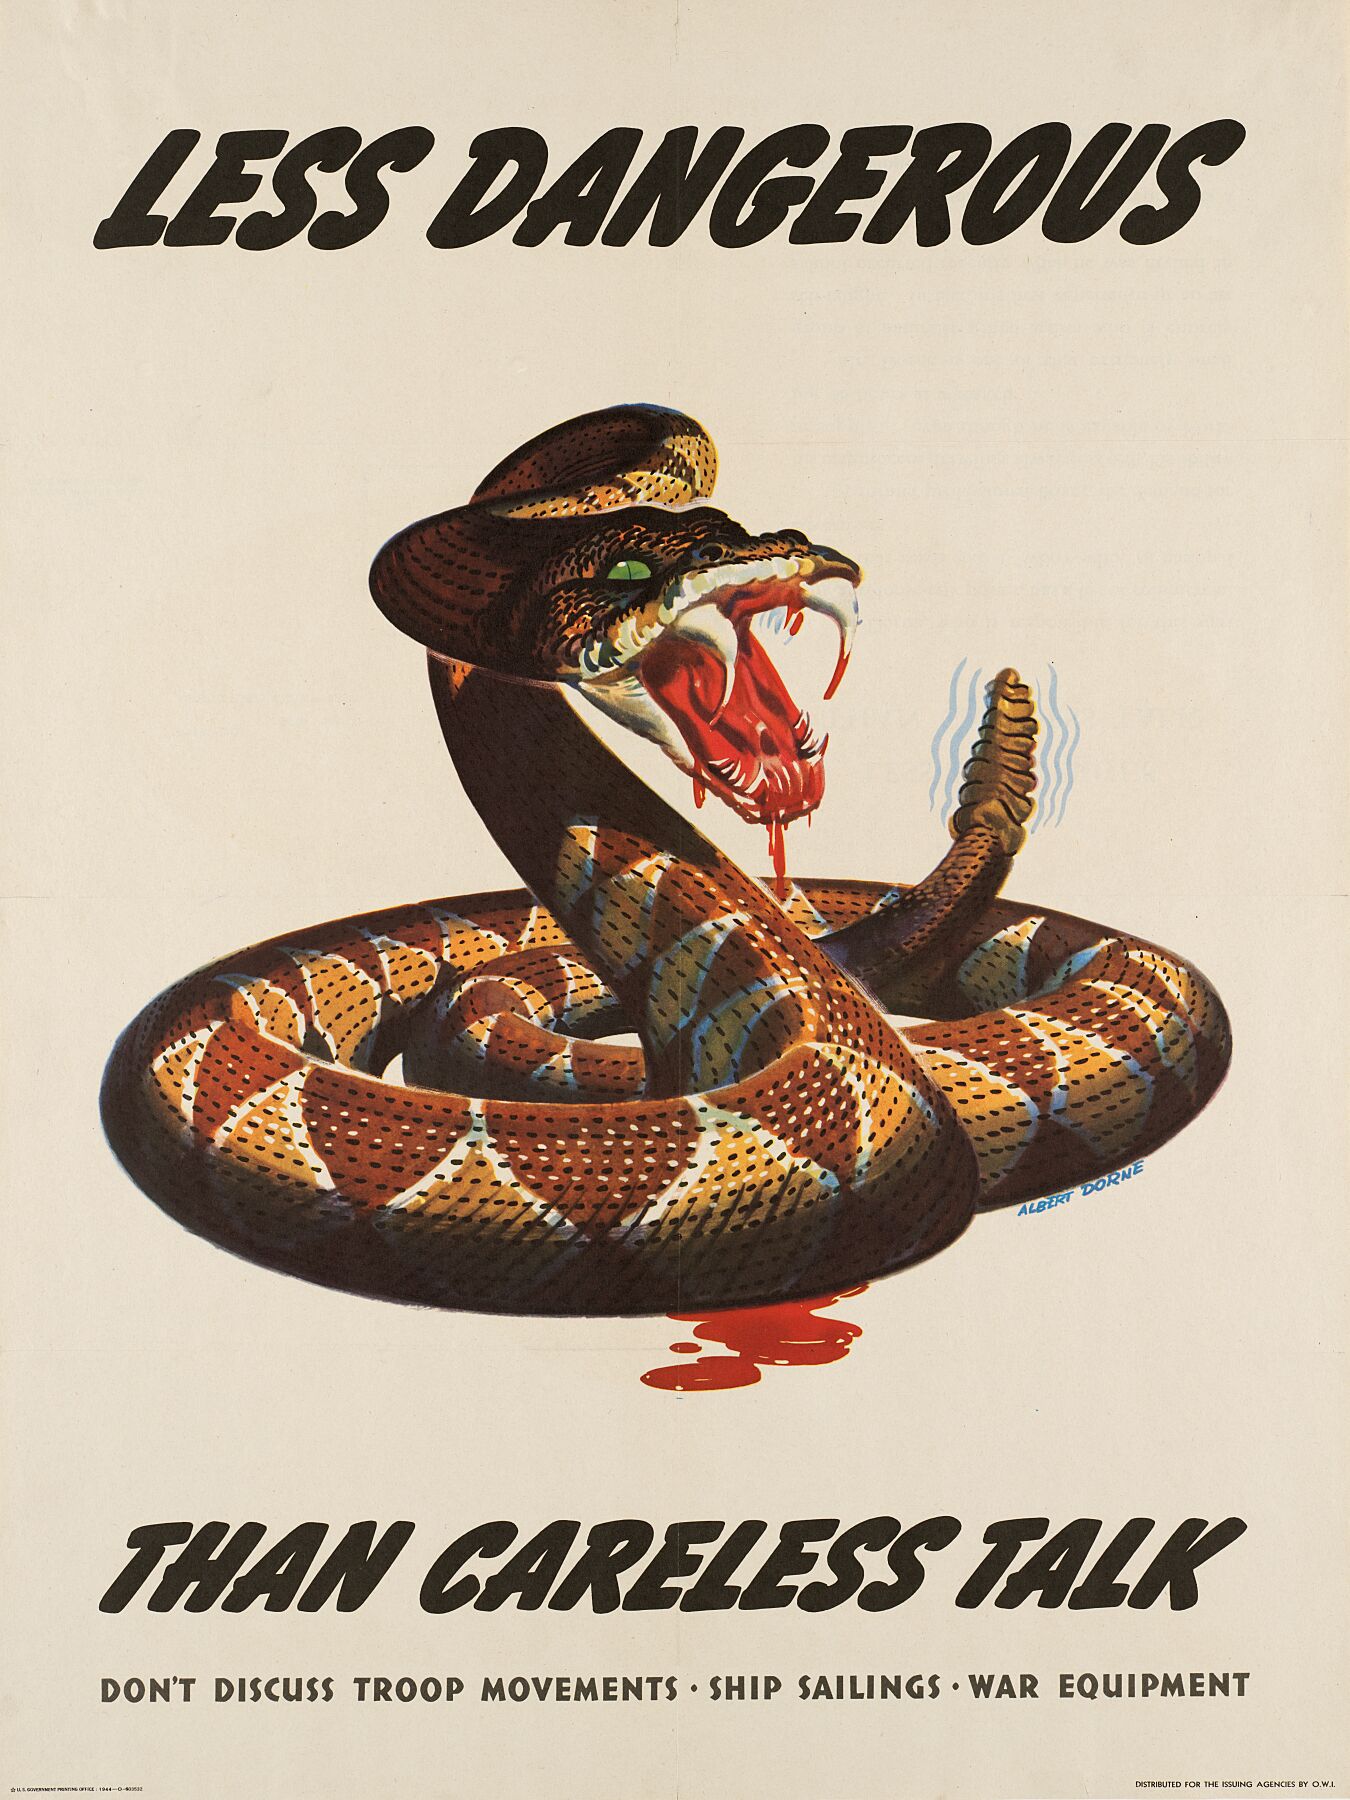 Less Dangerous than Careless Talk by Albert Dorne - 1944